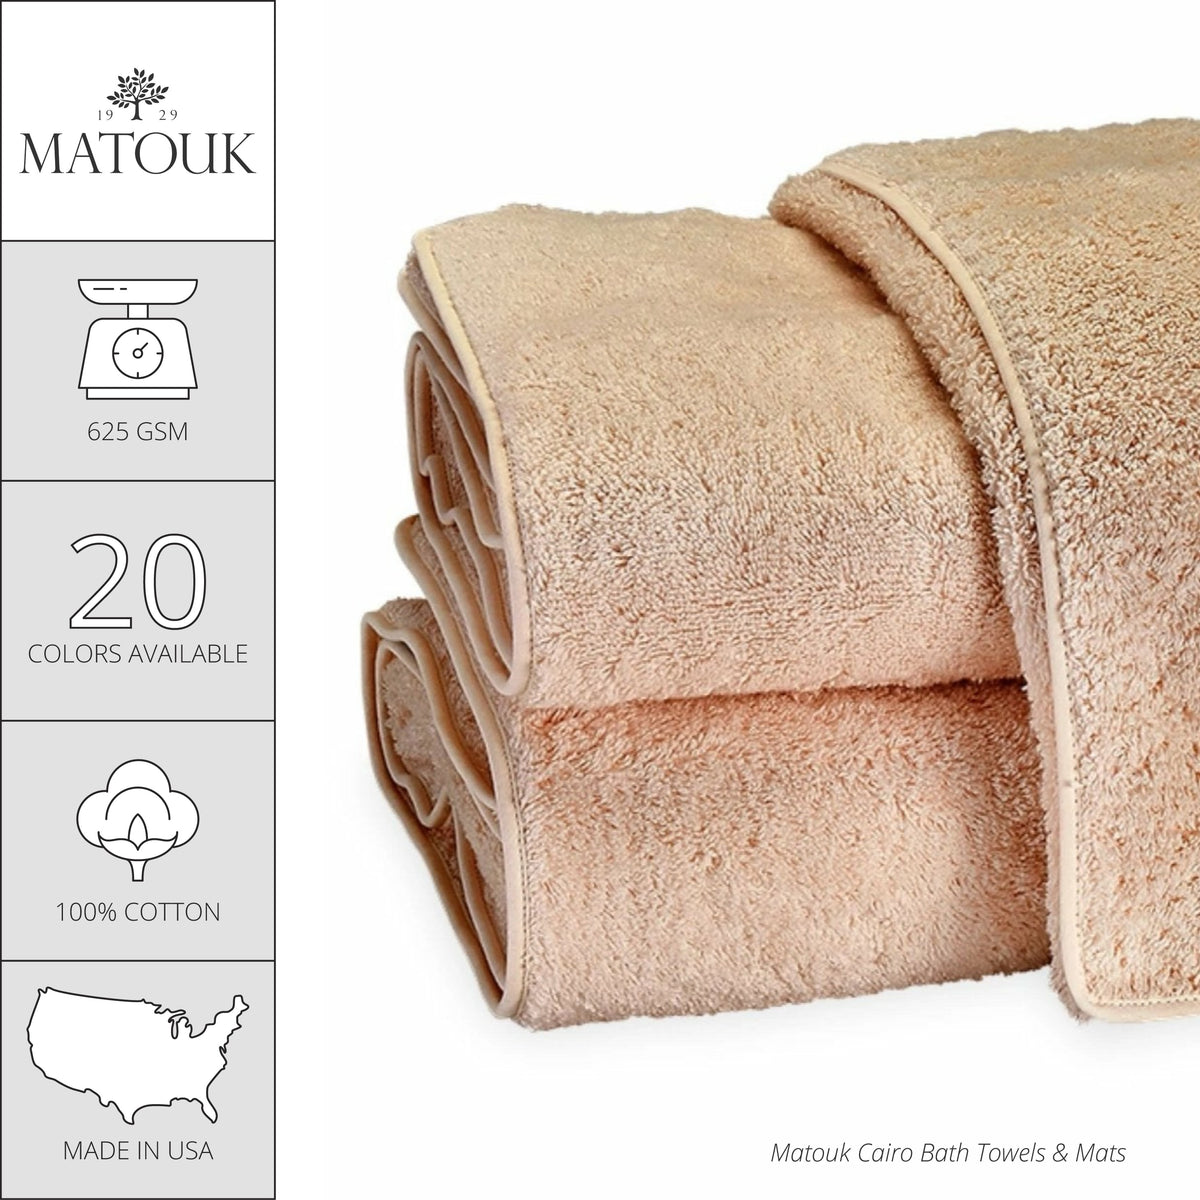 Matouk Cairo Scallop Bath Towels and Mats - Blush/White